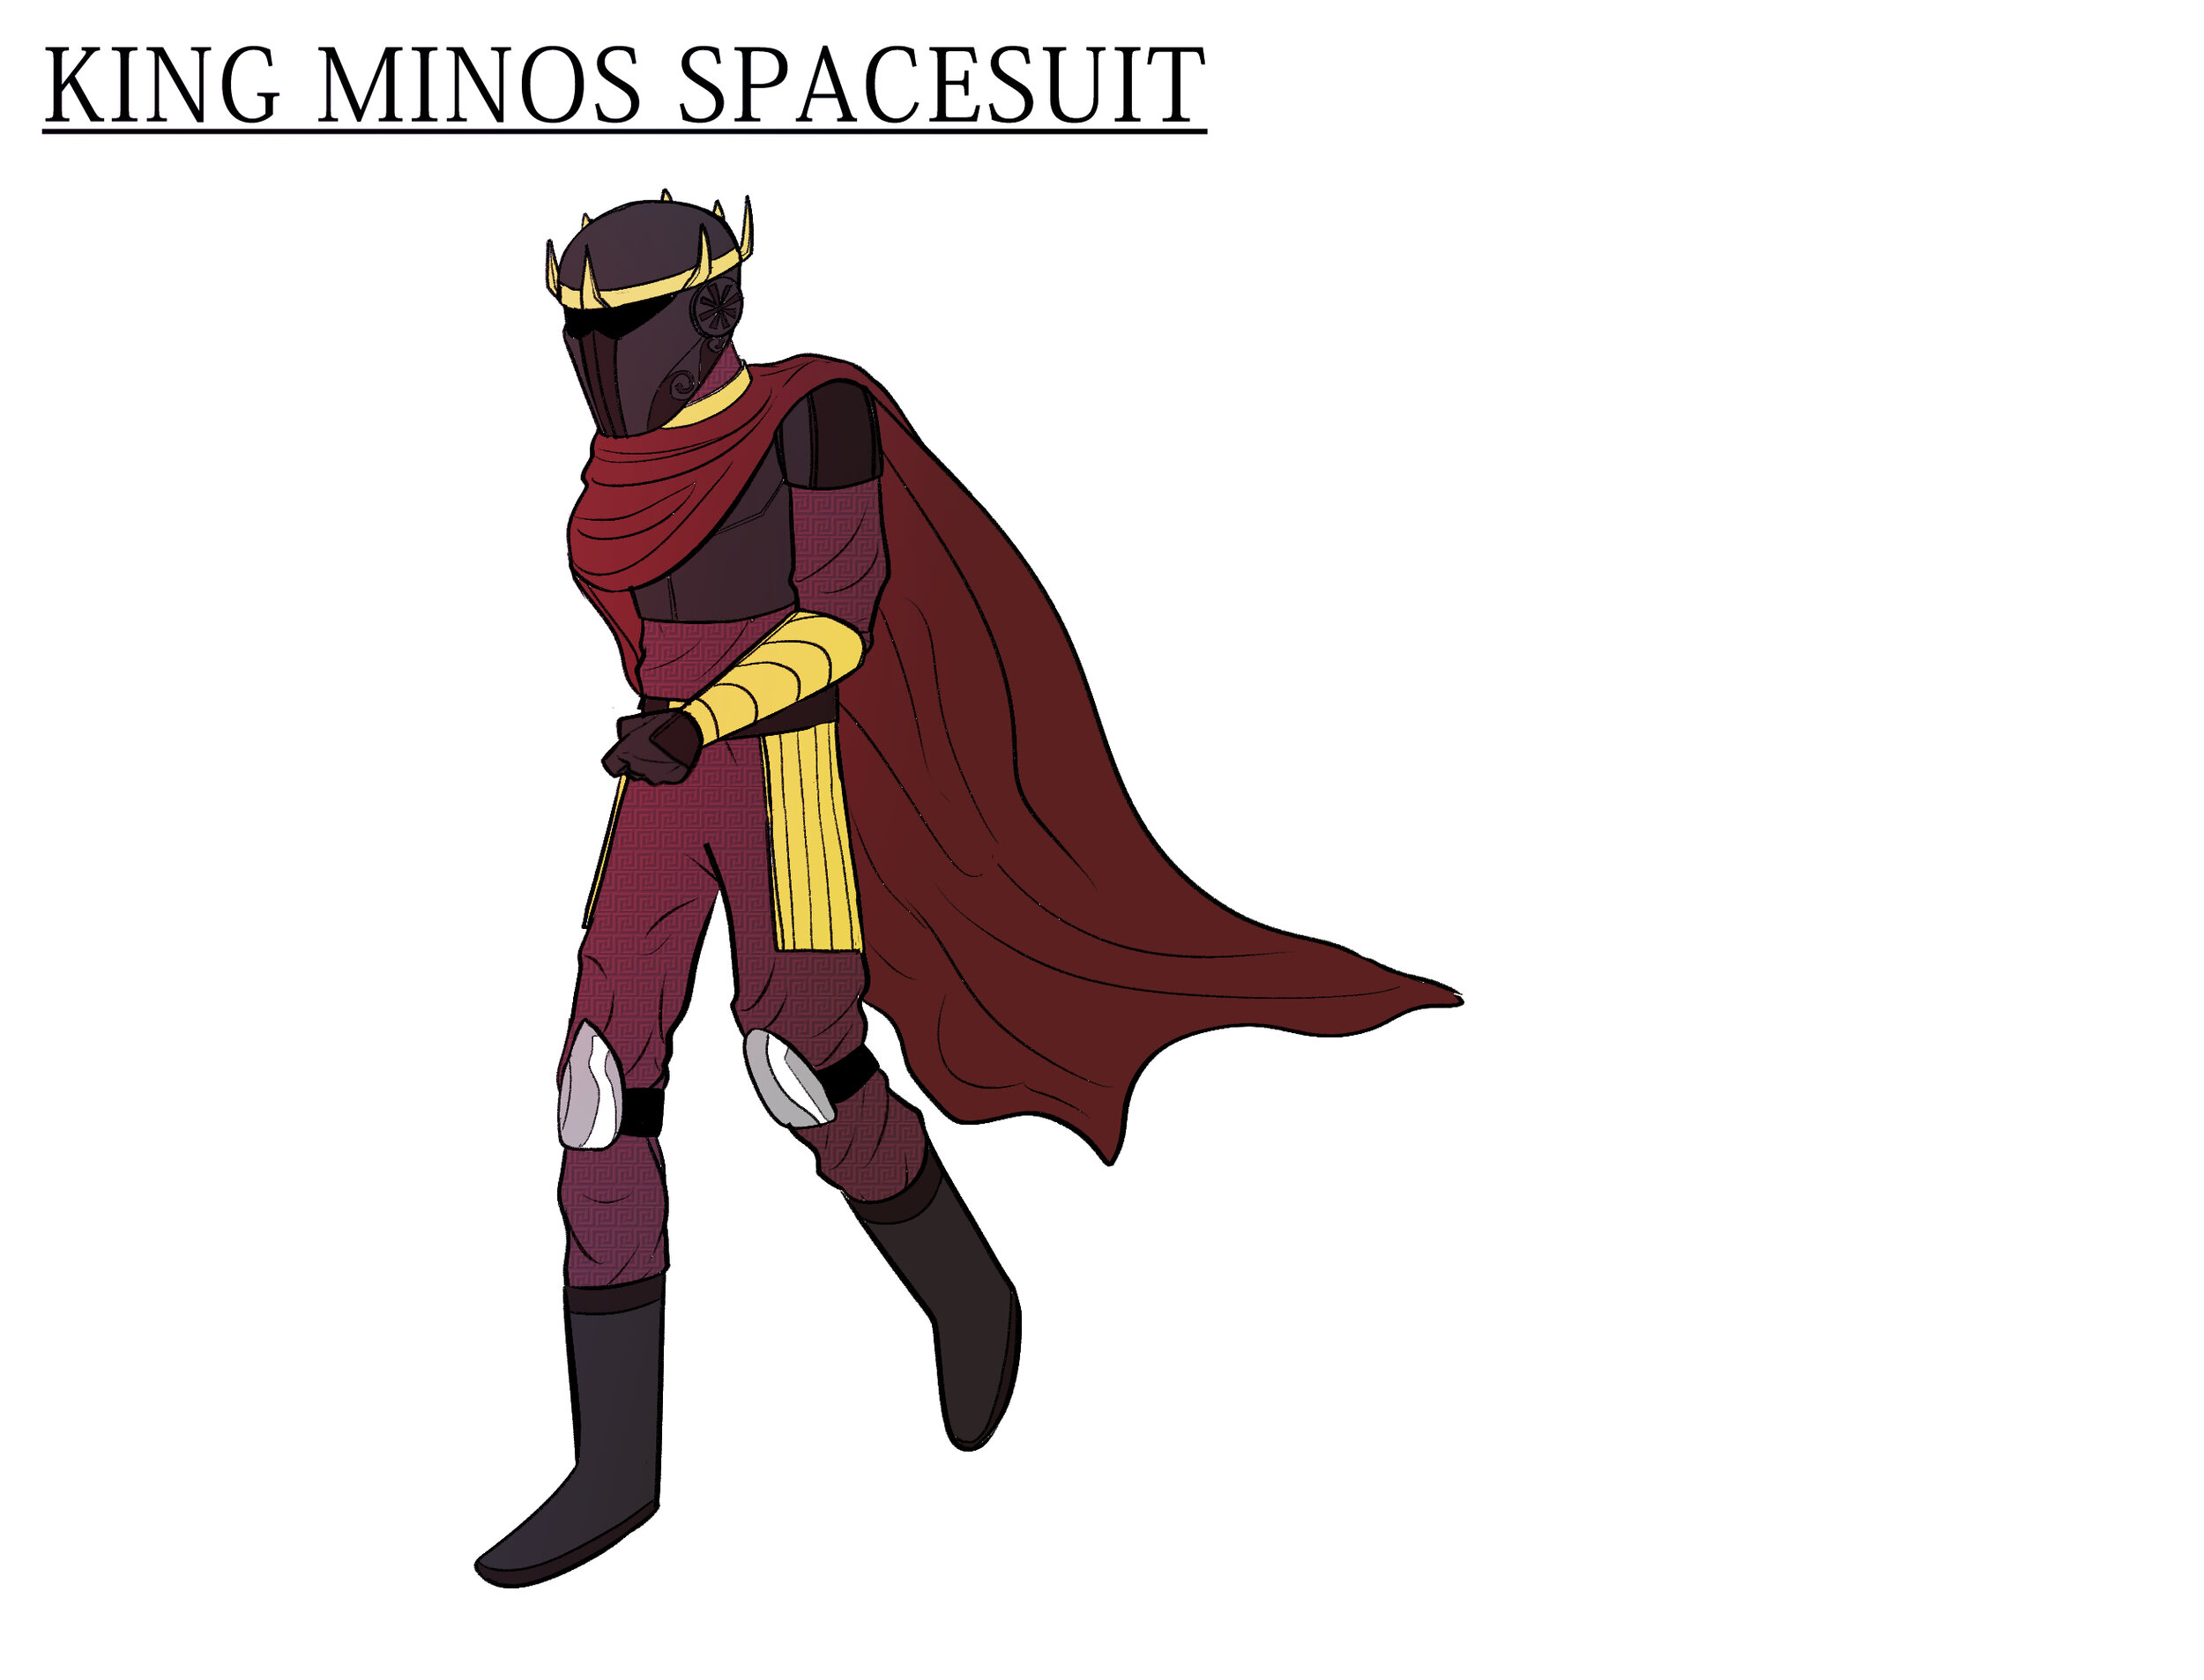 _FINAL - King Minos Spacesuit.jpg